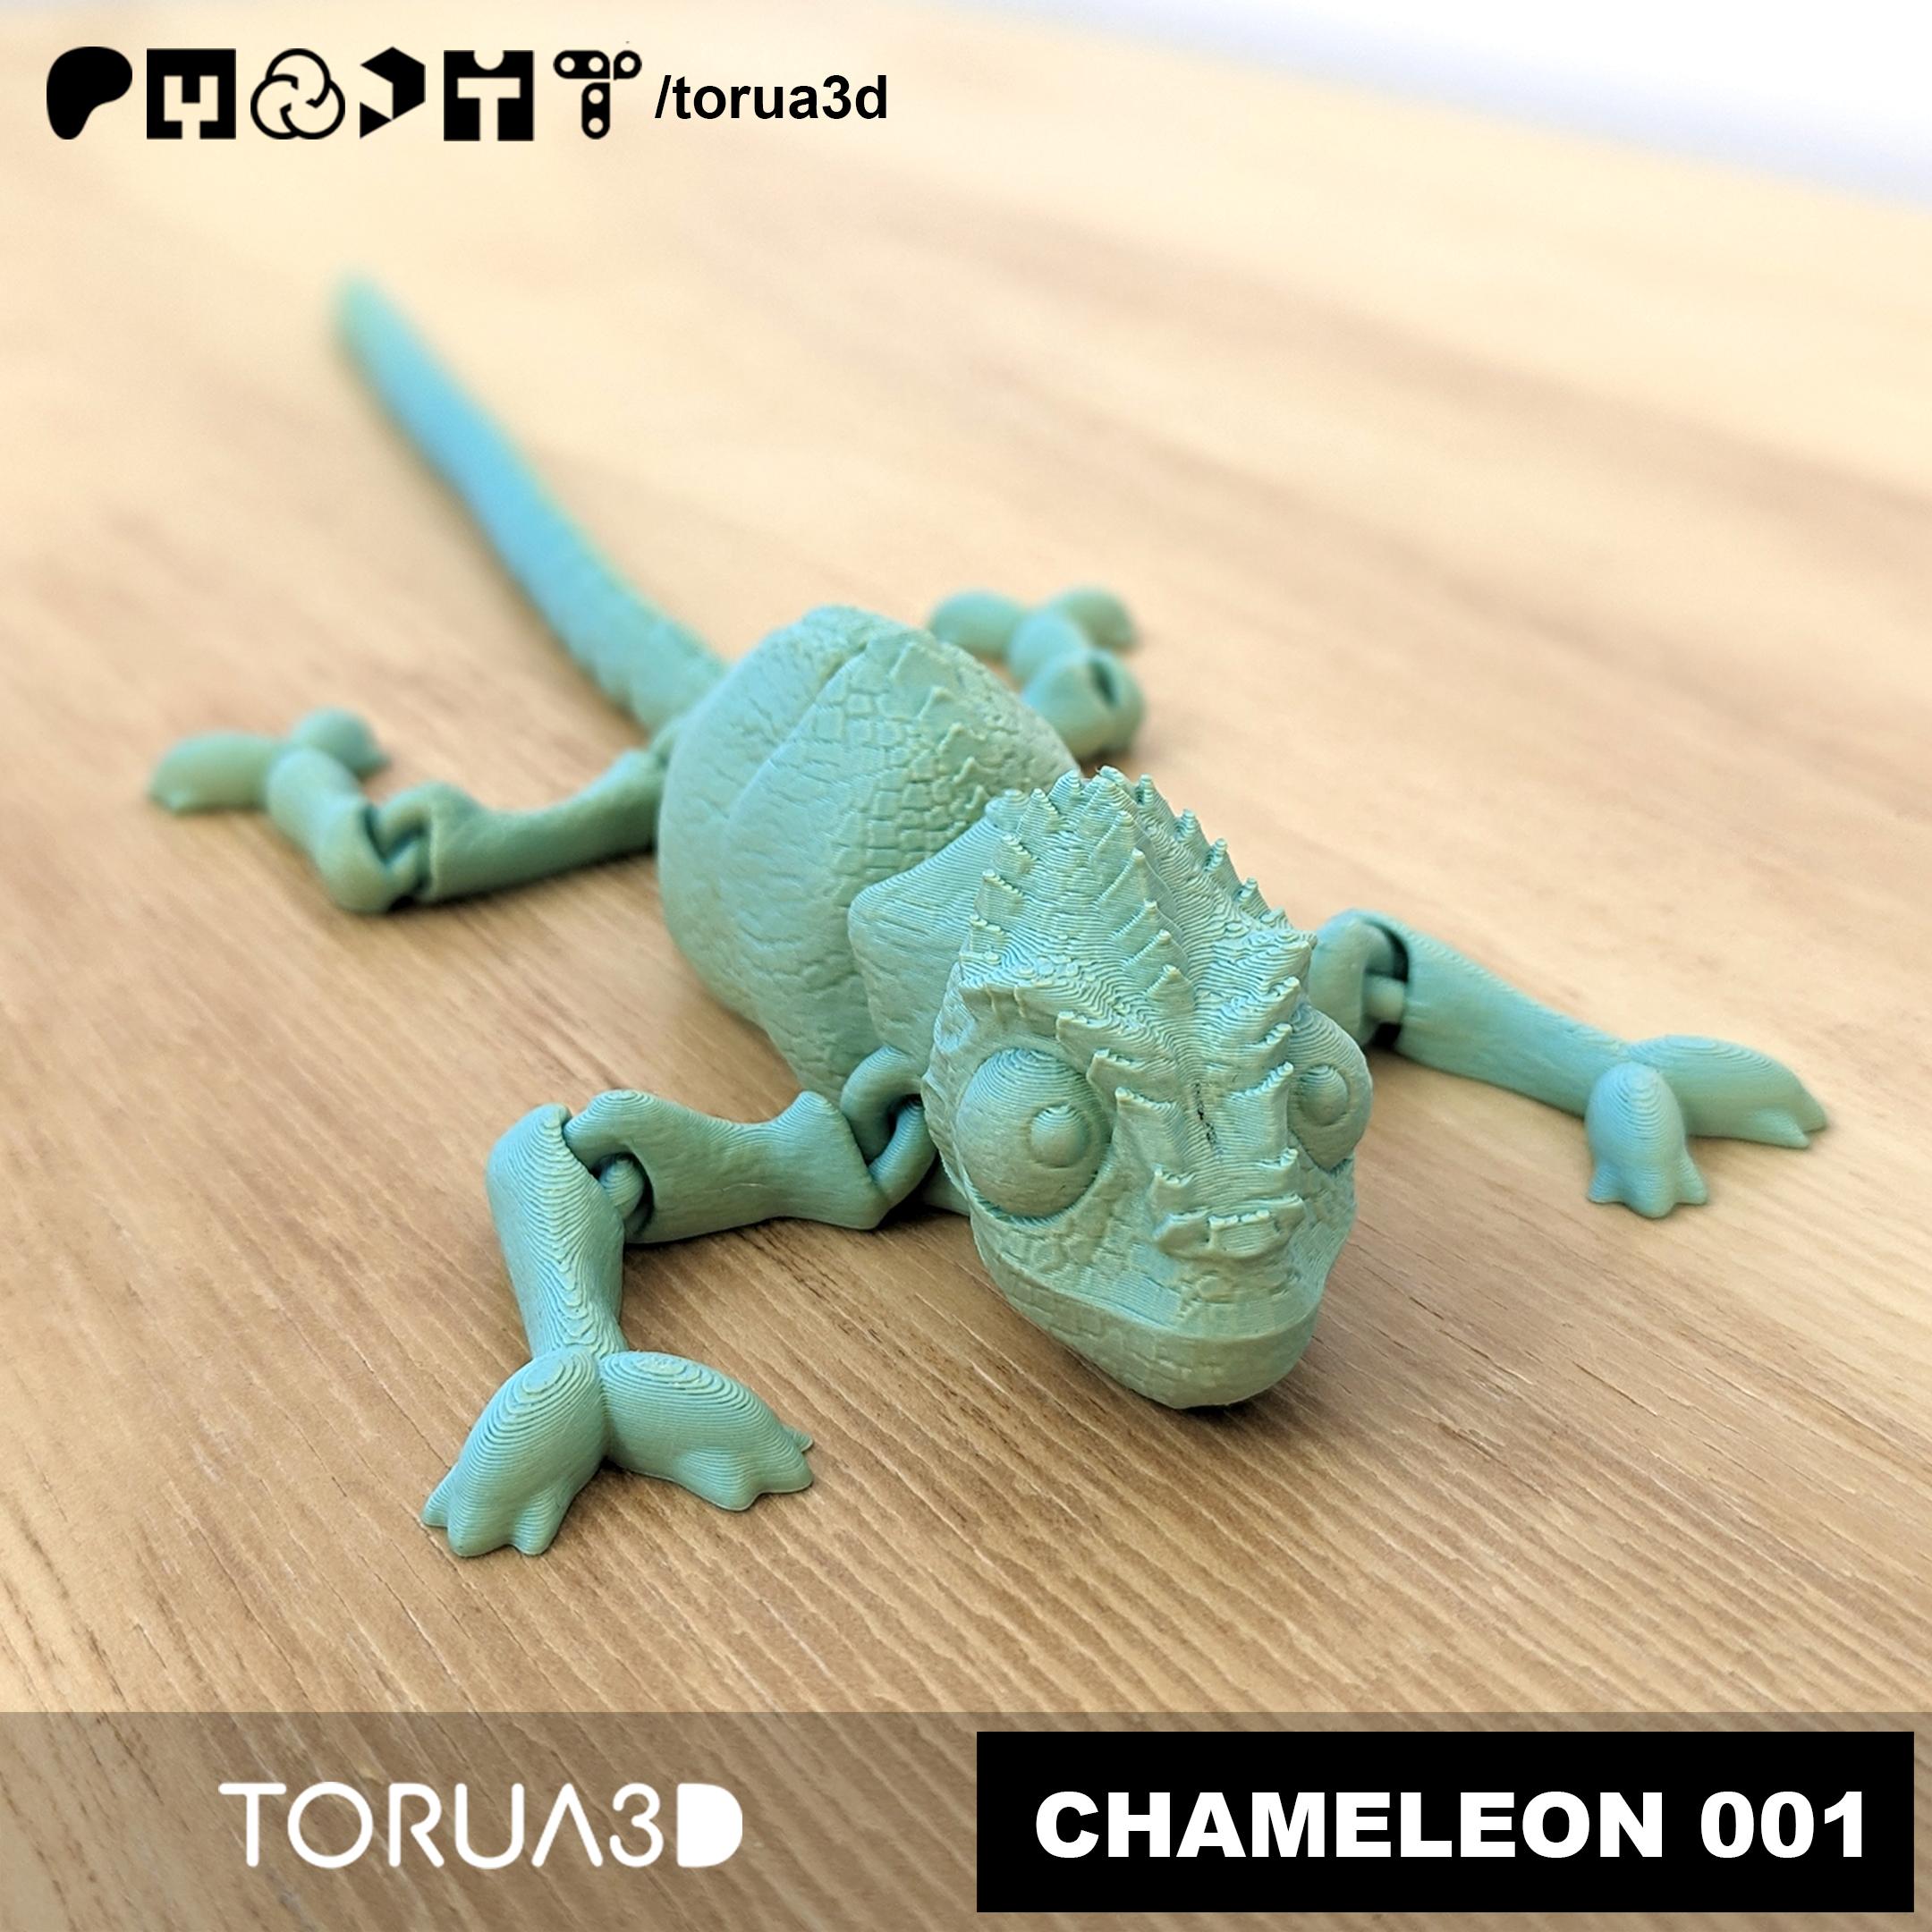 Articulated Chameleon 001 by TORUA3D 3d model